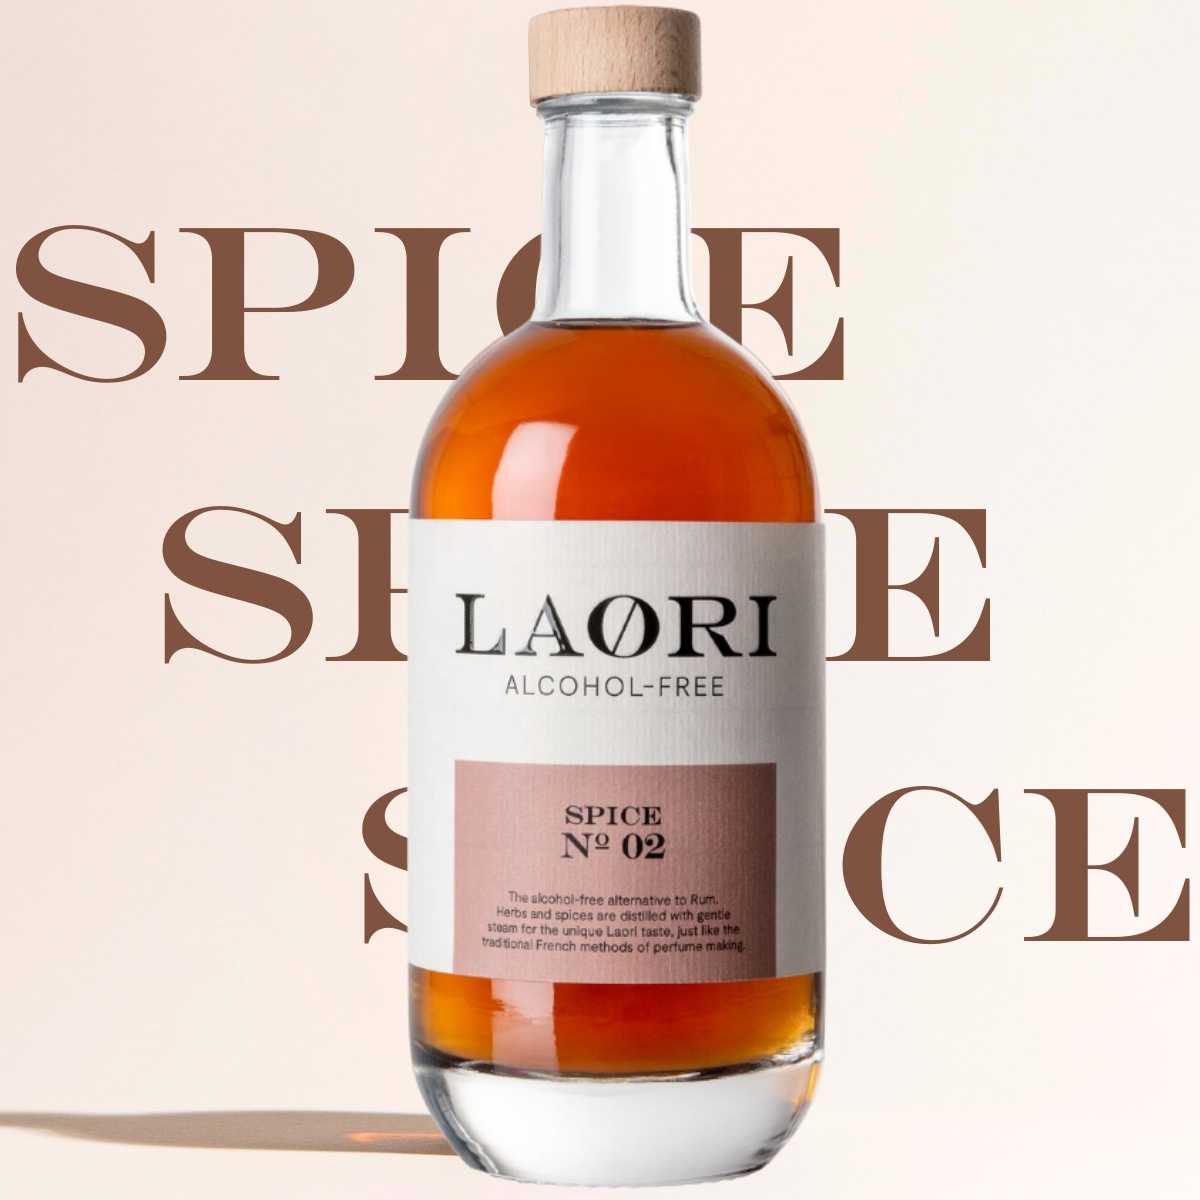 Have it all: 6x Laori Spice No 02 (0.5l) - value set